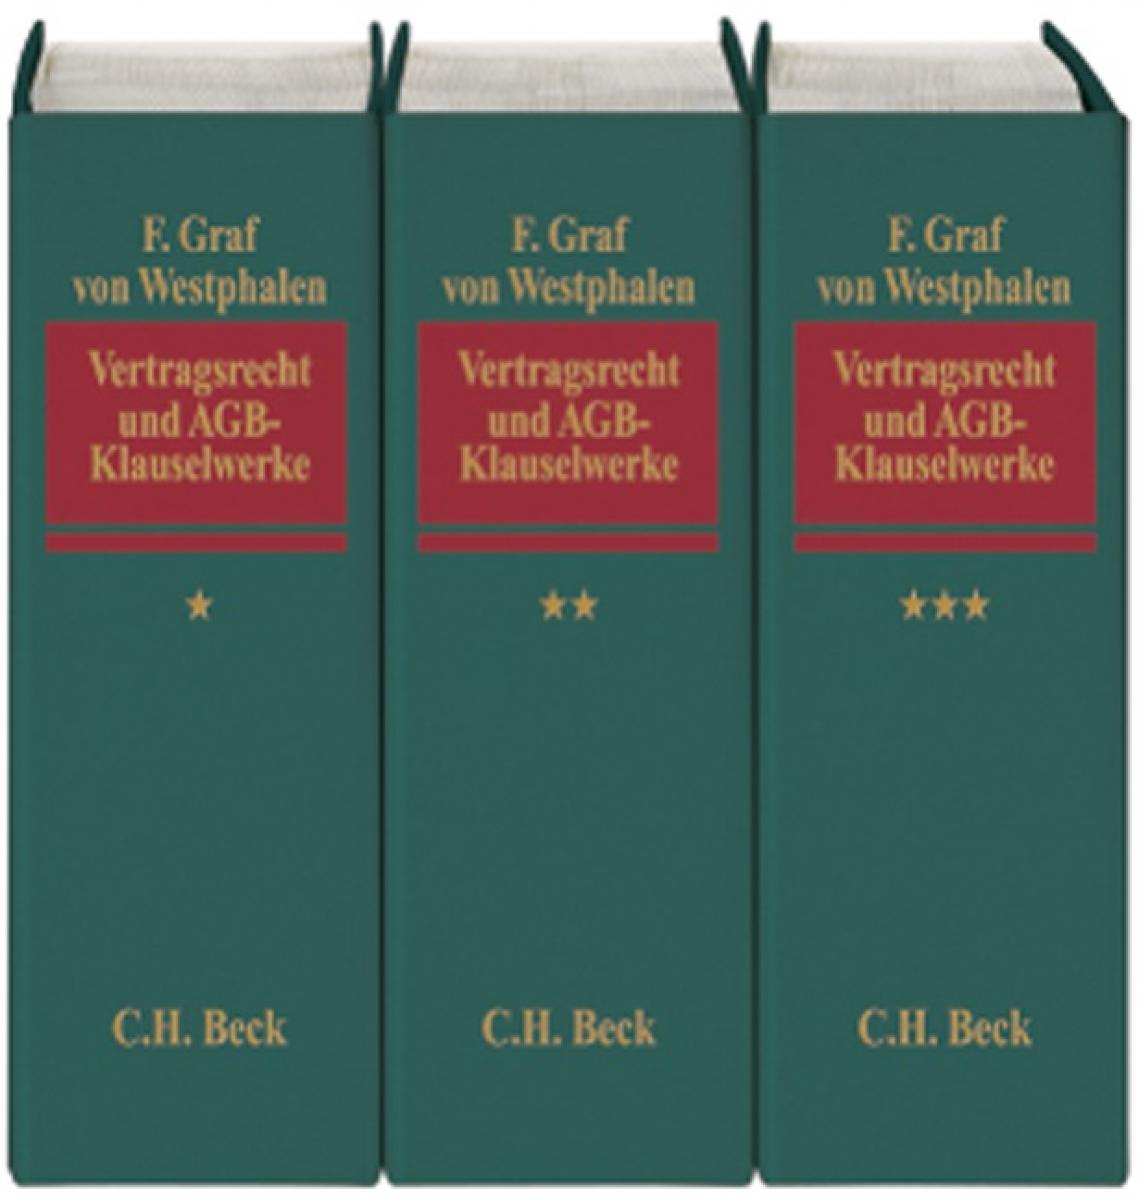 Vertragsrecht und AGB-Klauselwerke - Loseblattwerk | Graf von Westphalen